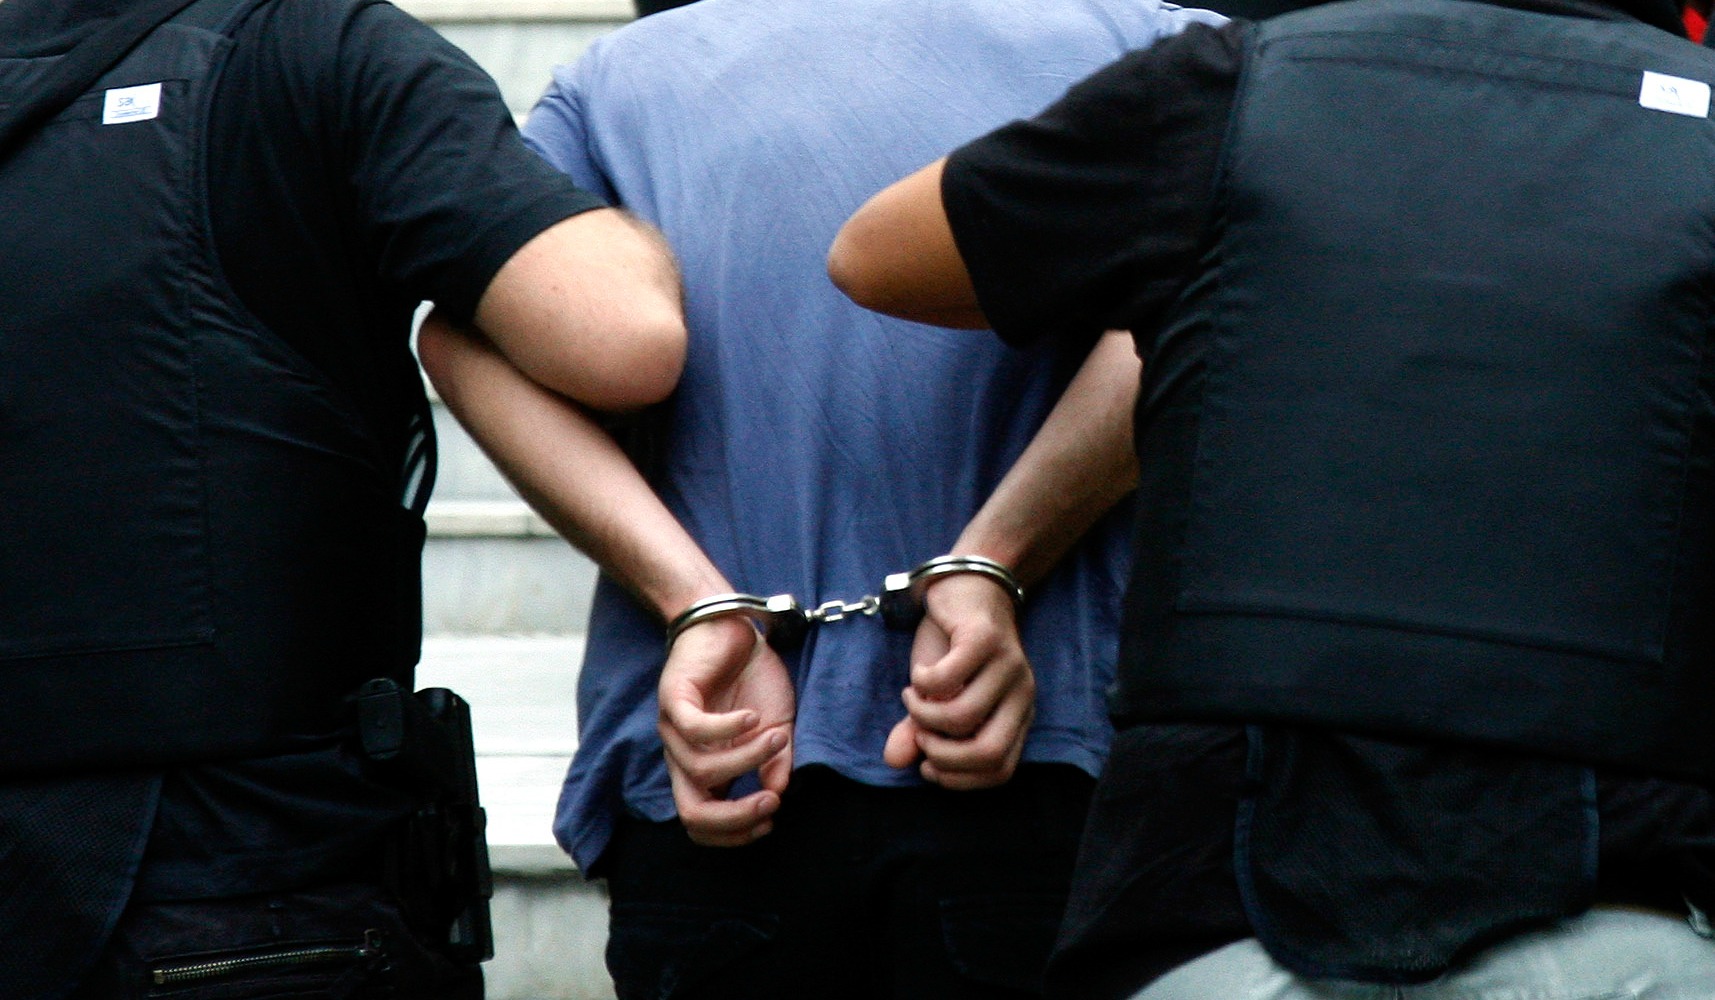 Τρίκαλα: 43χρονος πρόεδρος ομάδας συνελήφθη για διακίνηση κοκαΐνης – 85.145 ευρώ βρέθηκαν στο σπίτι του